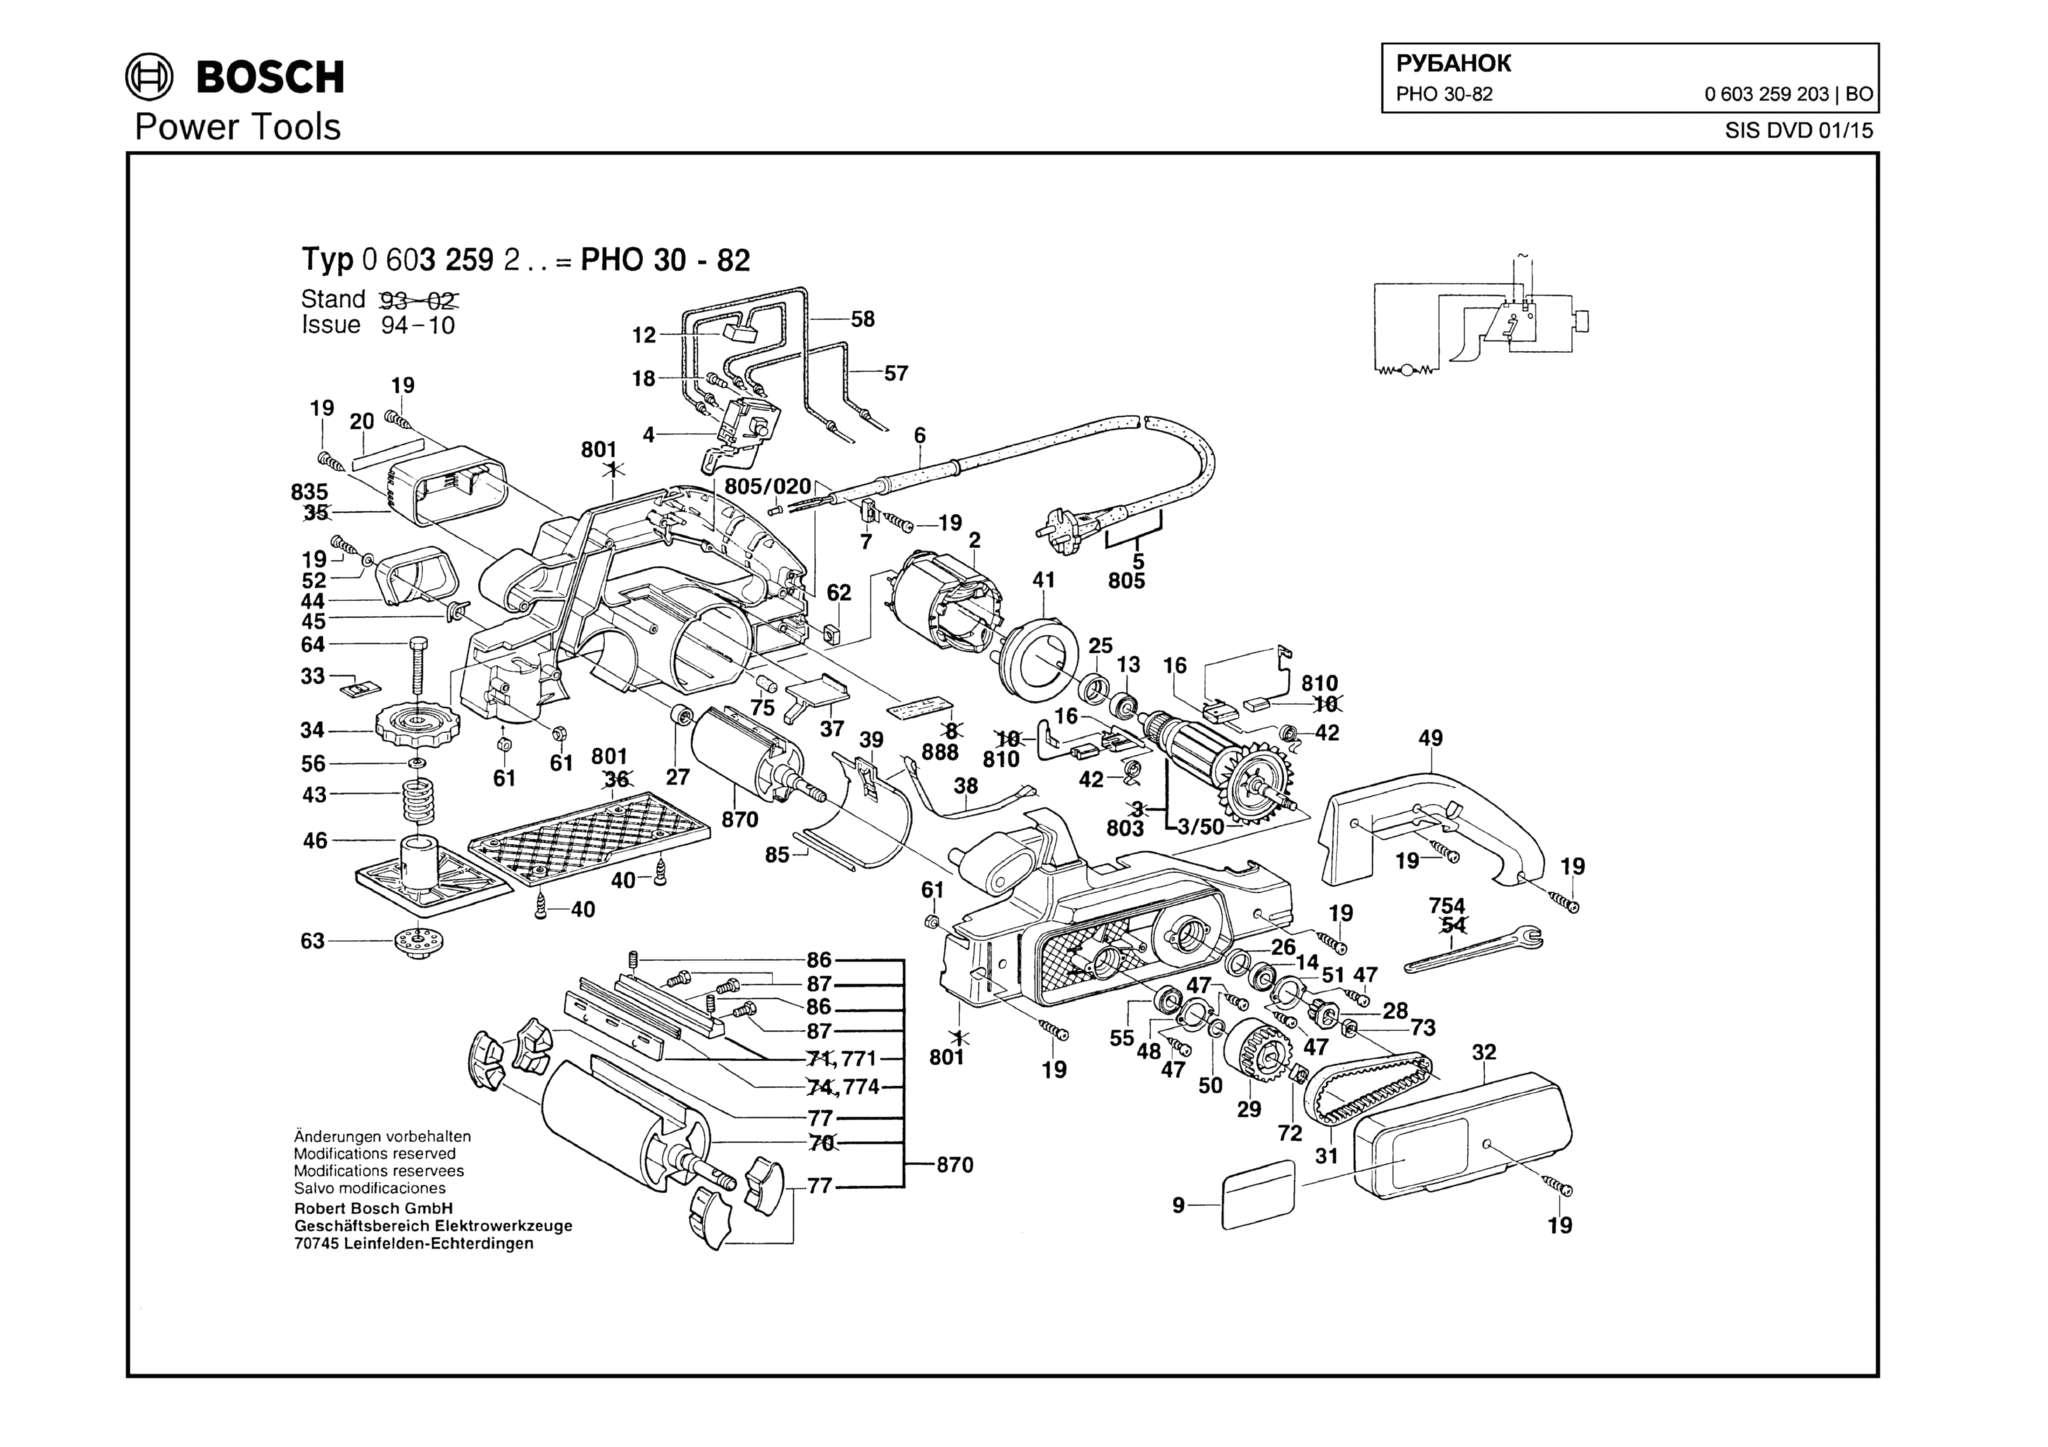 Запчасти, схема и деталировка Bosch PHO 30-82 (ТИП 0603259203)